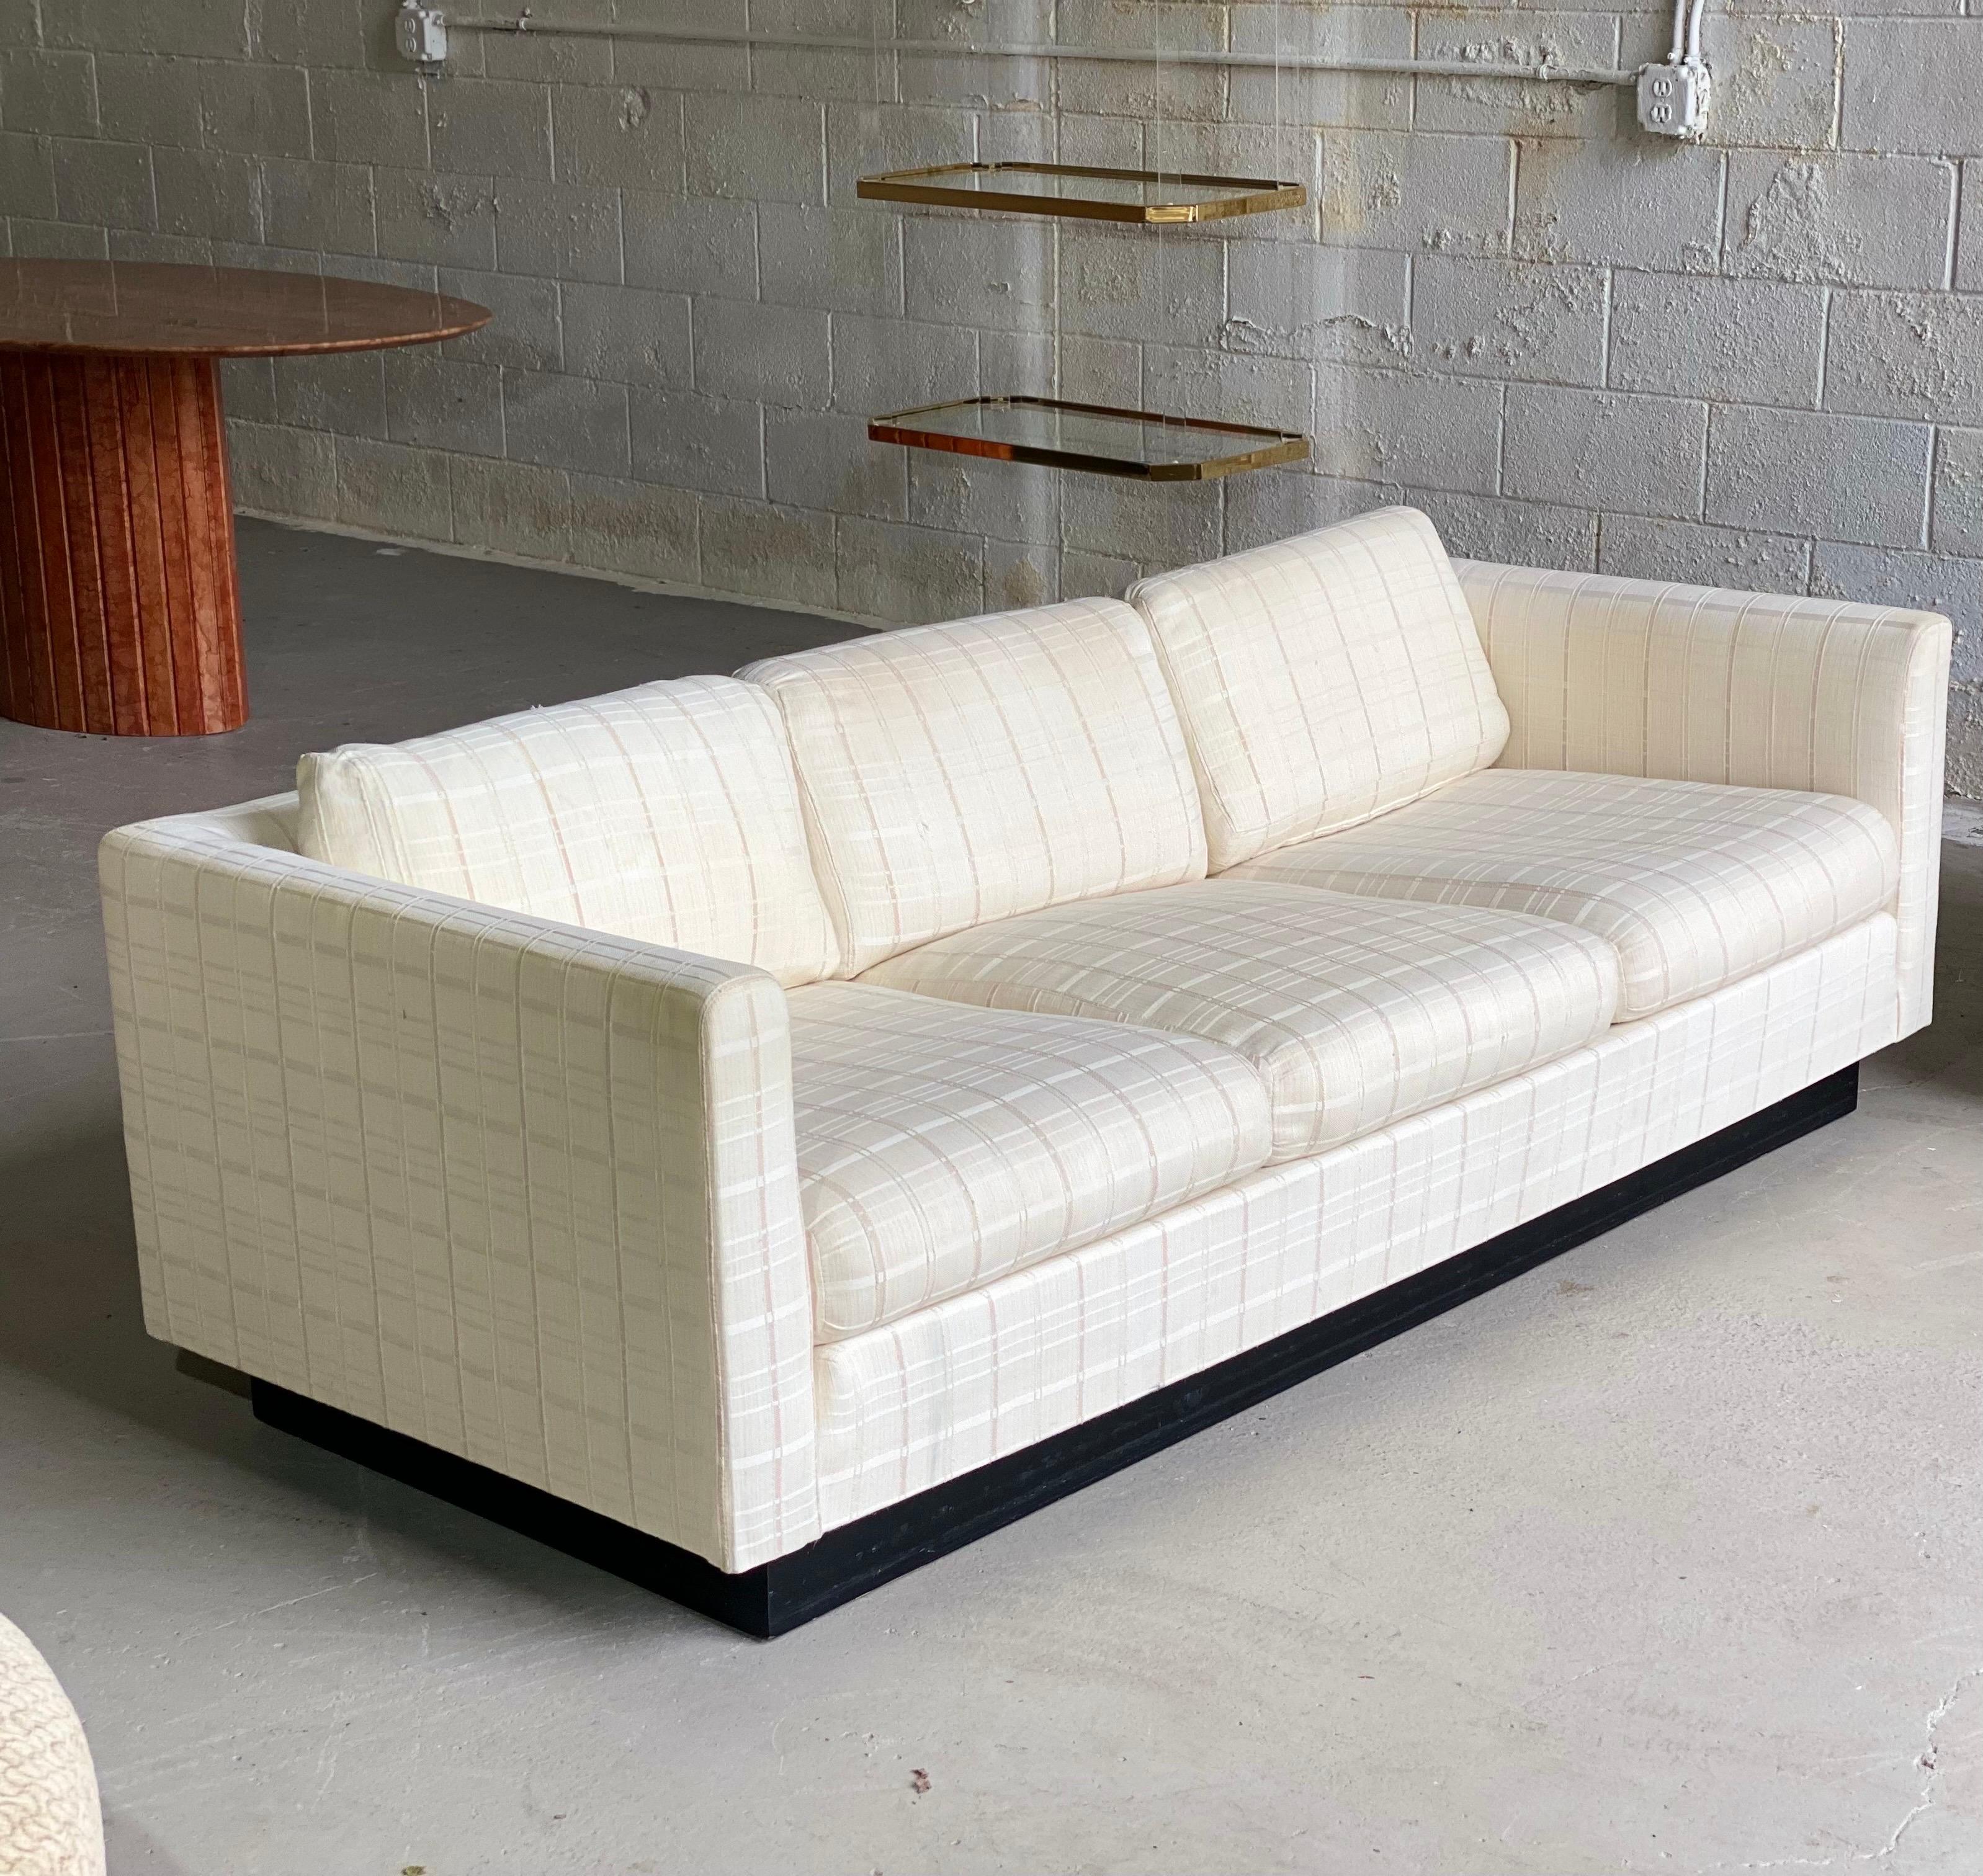 Wir freuen uns sehr, ein schickes Smoking-Sofa im Stil von Milo Baughman aus den 1980er Jahren anbieten zu können. Das Möbelstück besteht aus einem umlaufenden Rahmen, der mit einem neutralen Leinenstoff bezogen ist und von einem schwarzen Sockel